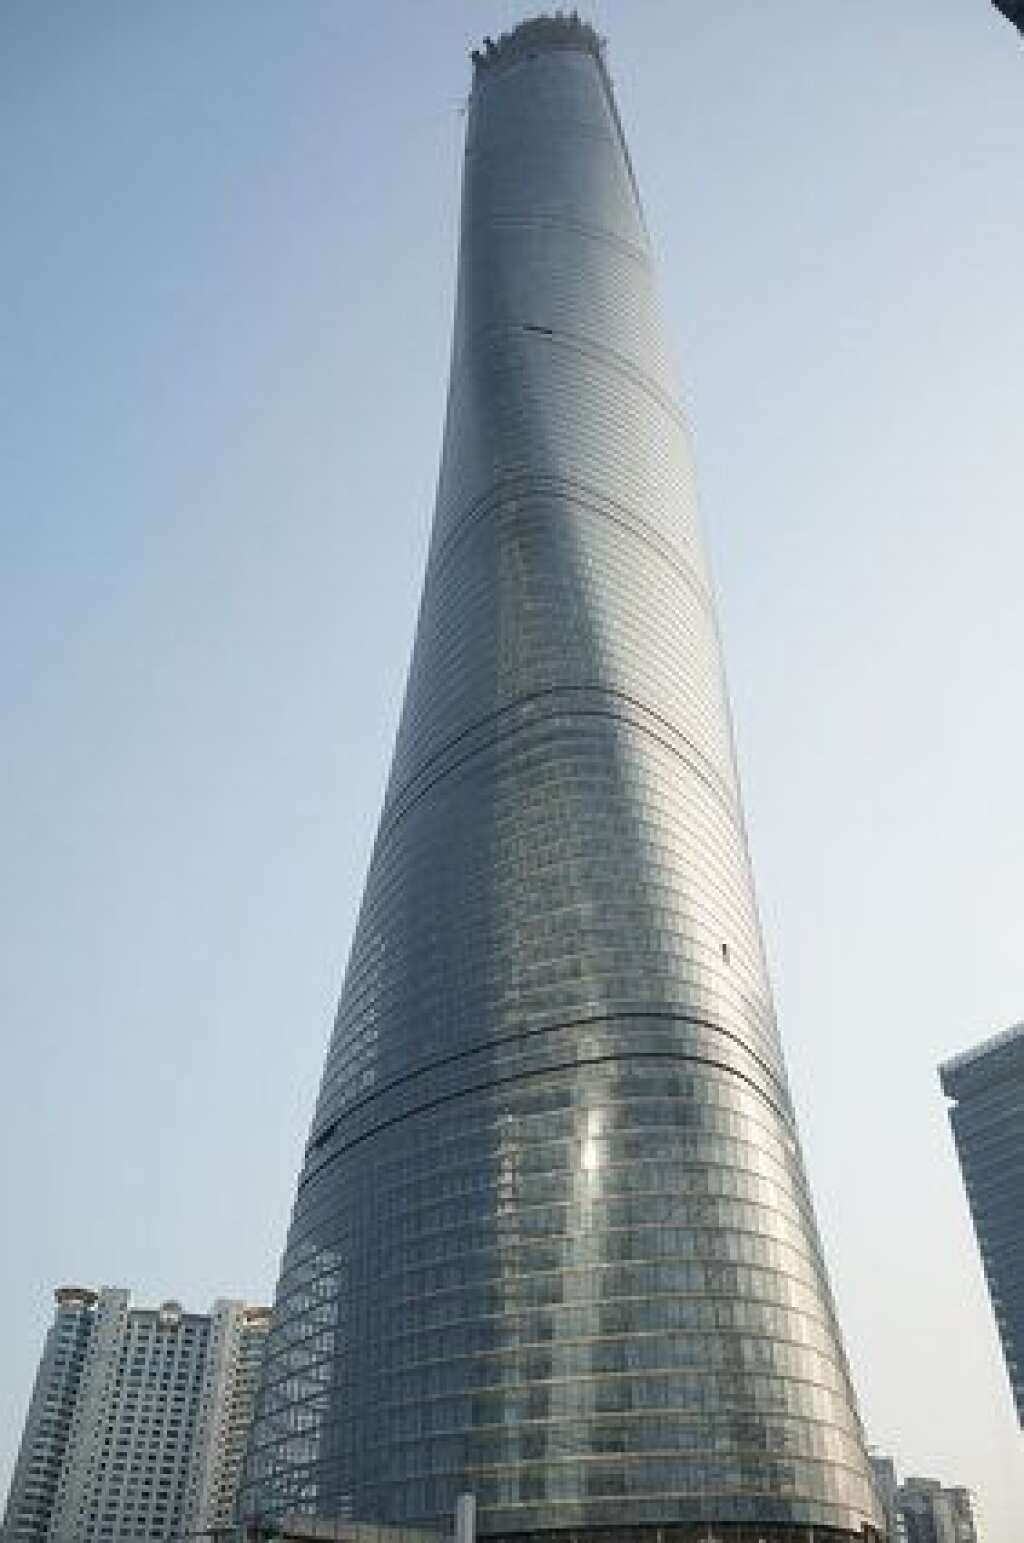 La Shanghai Tower (Chine) - Une fois livrée en cours d'année, la Shanghai Tower <a href="http://tempsreel.nouvelobs.com/immobilier/monde/20140804.OBS5470/shanghai-tower-la-plus-haute-chinoise-bientot-finie.html" target="_blank">sera la deuxième plus haute tour du monde</a>. Les chiffres donnent le vertige: 632 mètres de haut, 127 étages et 380.000 m² de superficie au sol... Elle hébergera des bureaux, des centres commerciaux, un hôtel 5 étoiles et des espaces de divertissement.